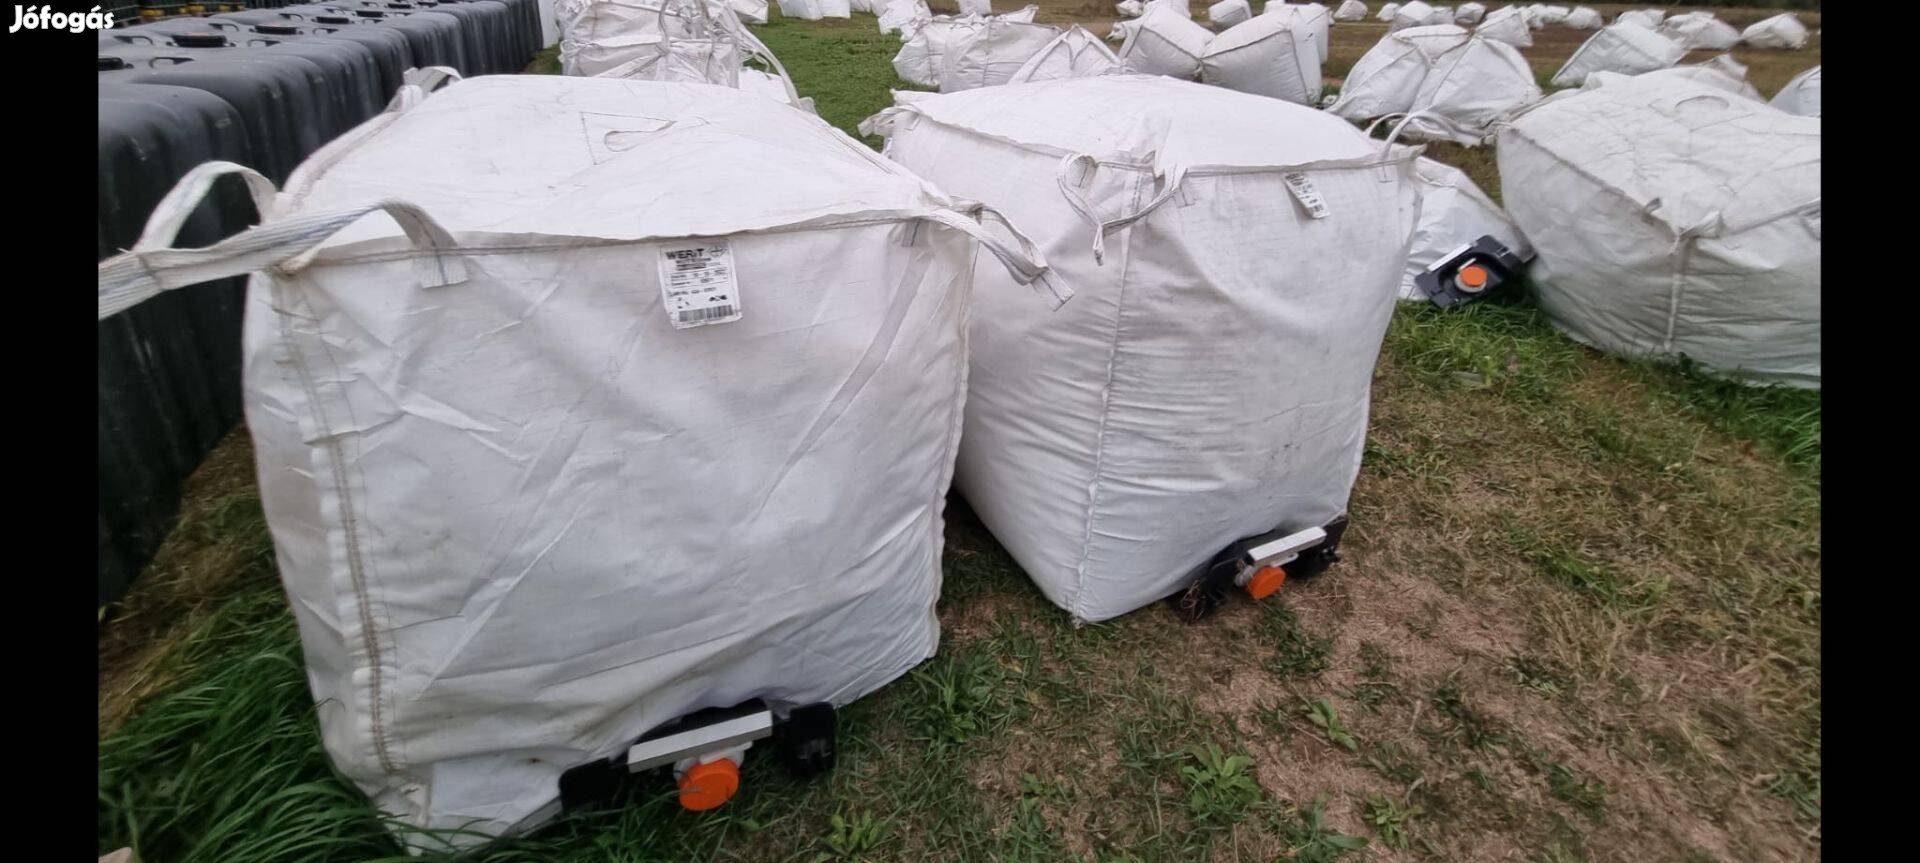 Ibc 1000 literes Big beg zsák folyékony anyagok szállítására 1500 Ft